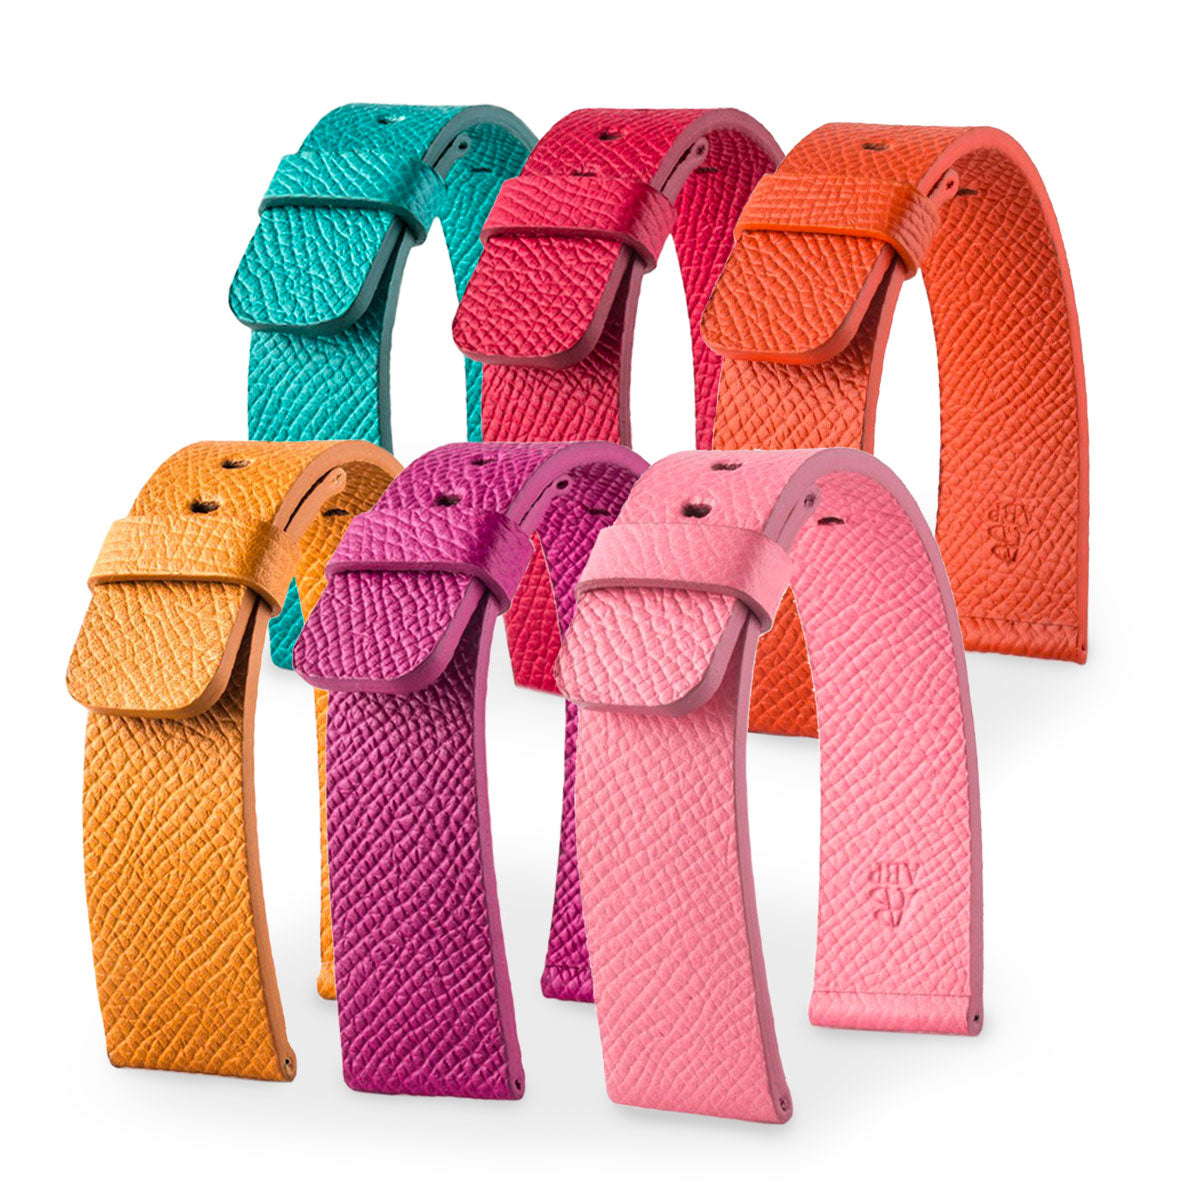 Apple Watch - Bracelet de montre cuir - Veau grainé (noir, bleu, marron, vert, rouge, orange...) - watch band leather strap - ABP Concept -